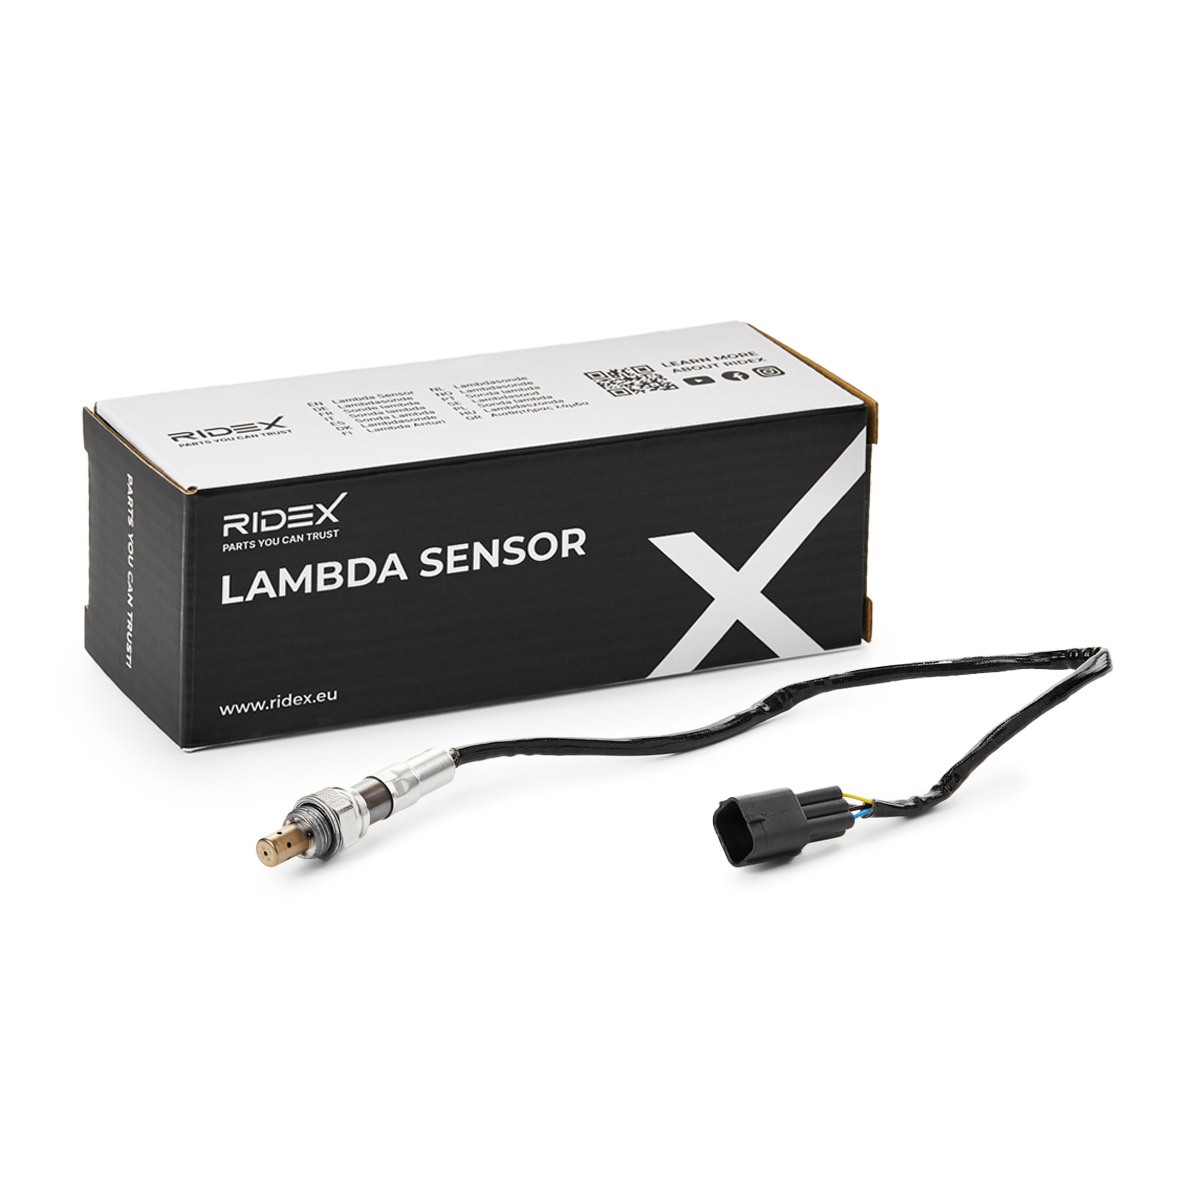 RIDEX 3922L0816 Lambda sensor Broadband lambda sensor, black, 5